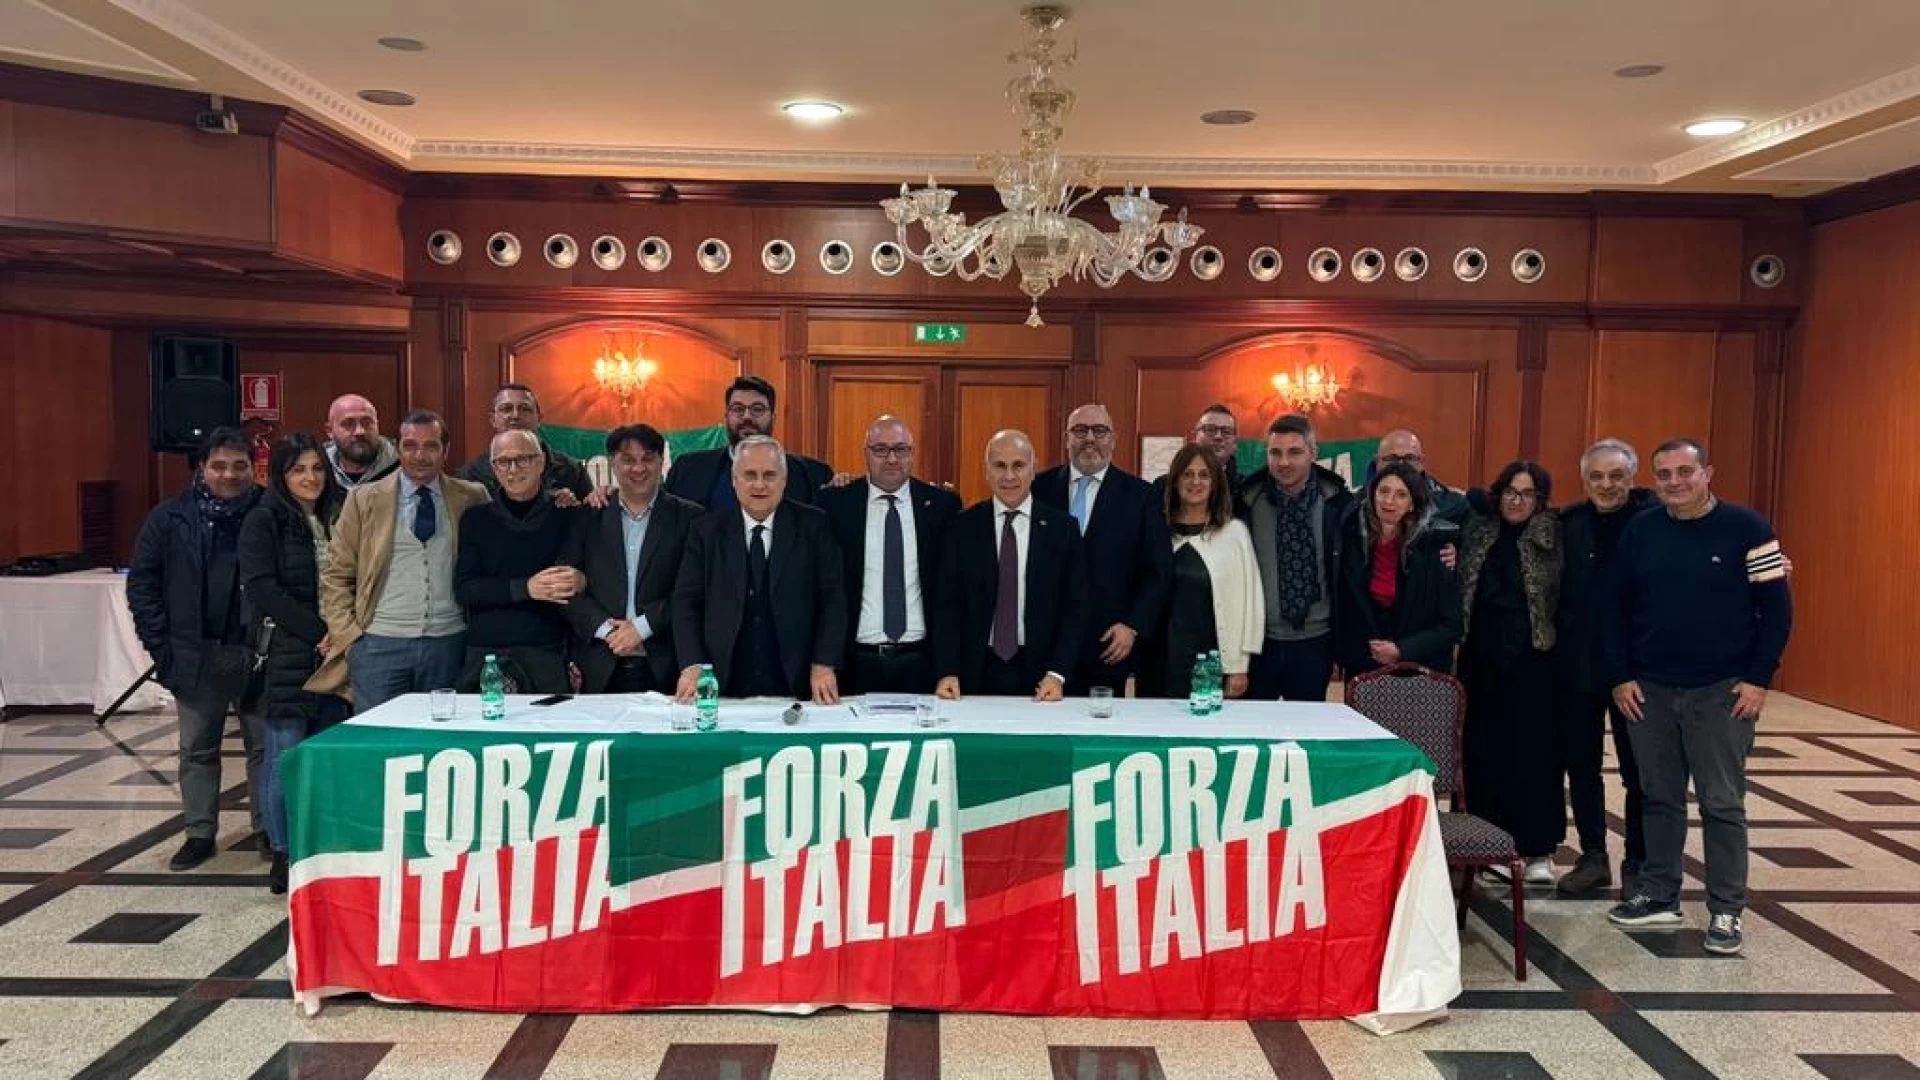 Forza Italia: Civetta coordinatore provinciale a Campobasso, Sacco a Isernia. Lotito:  "Presentate liste unitarie, insieme si vince"